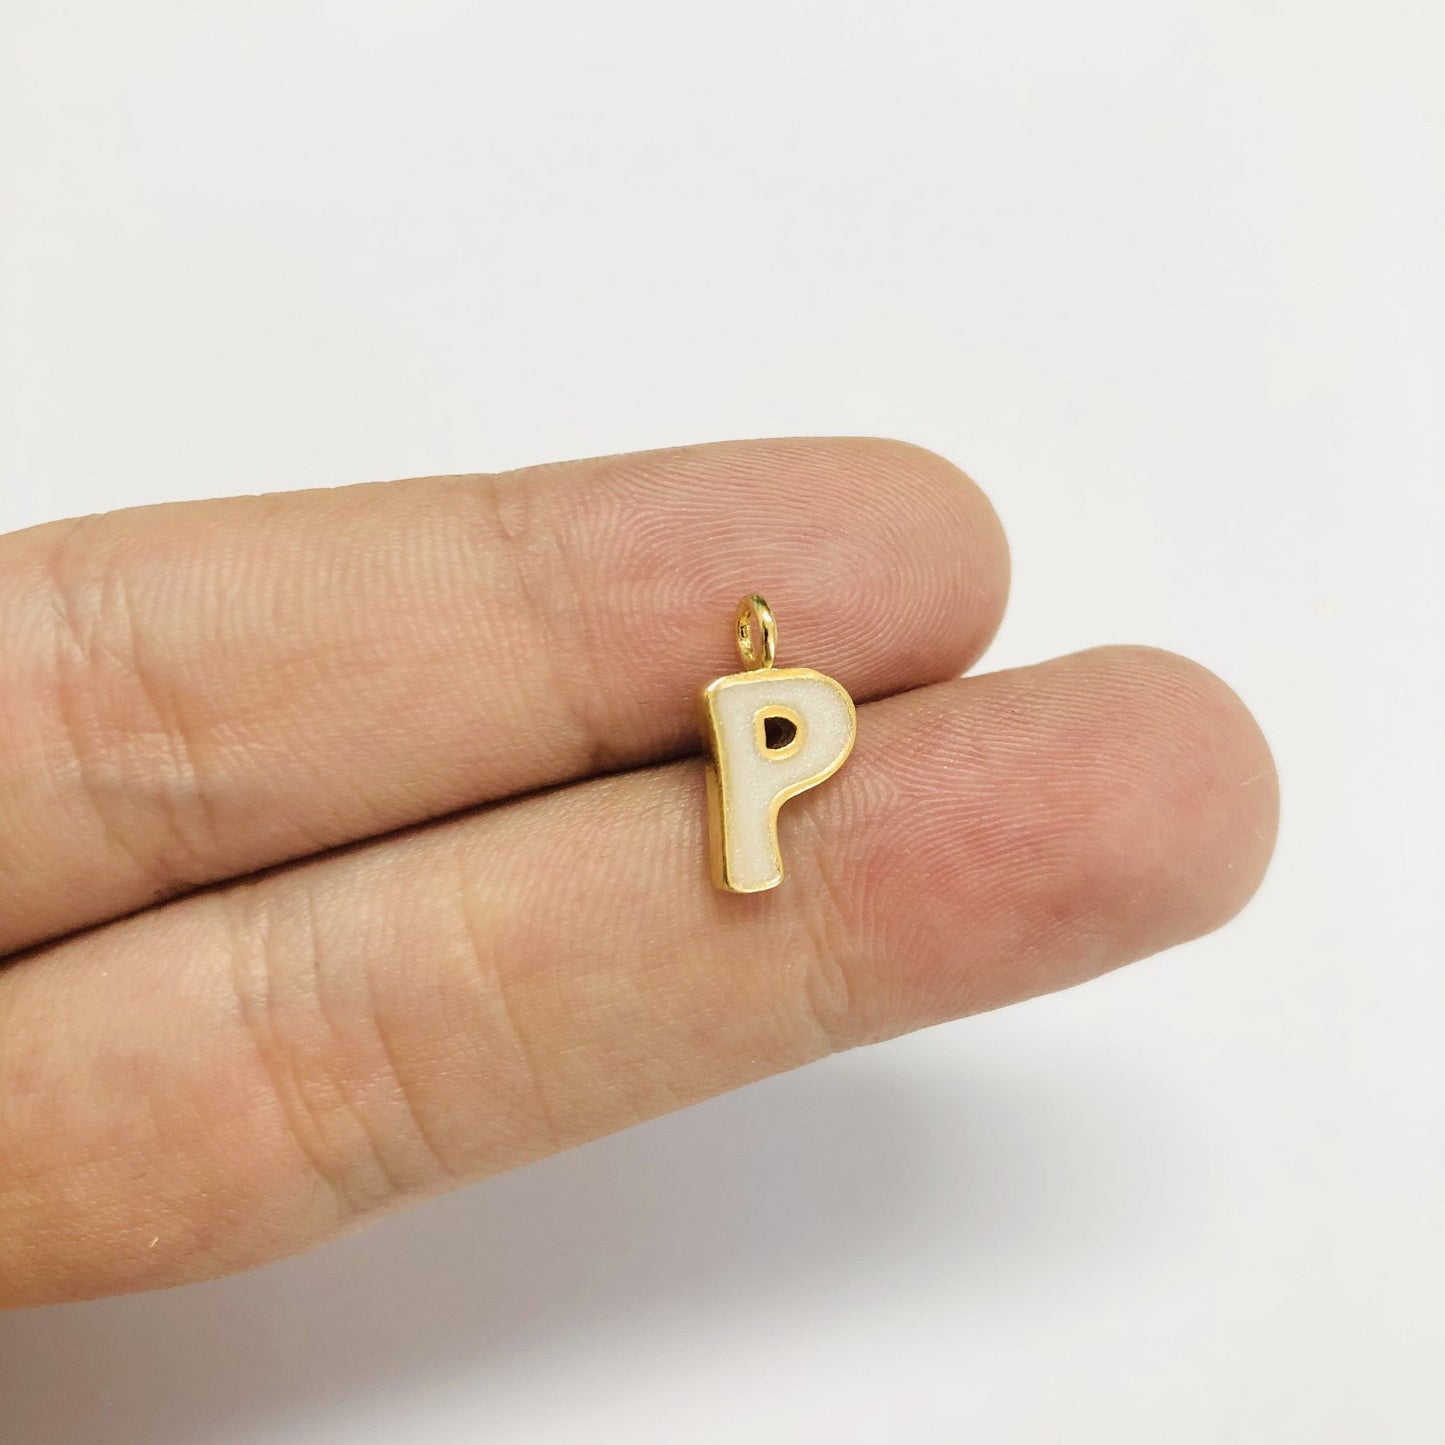 Vergoldete Emaille-Buchstaben-Hängevorrichtung – Perlmutt